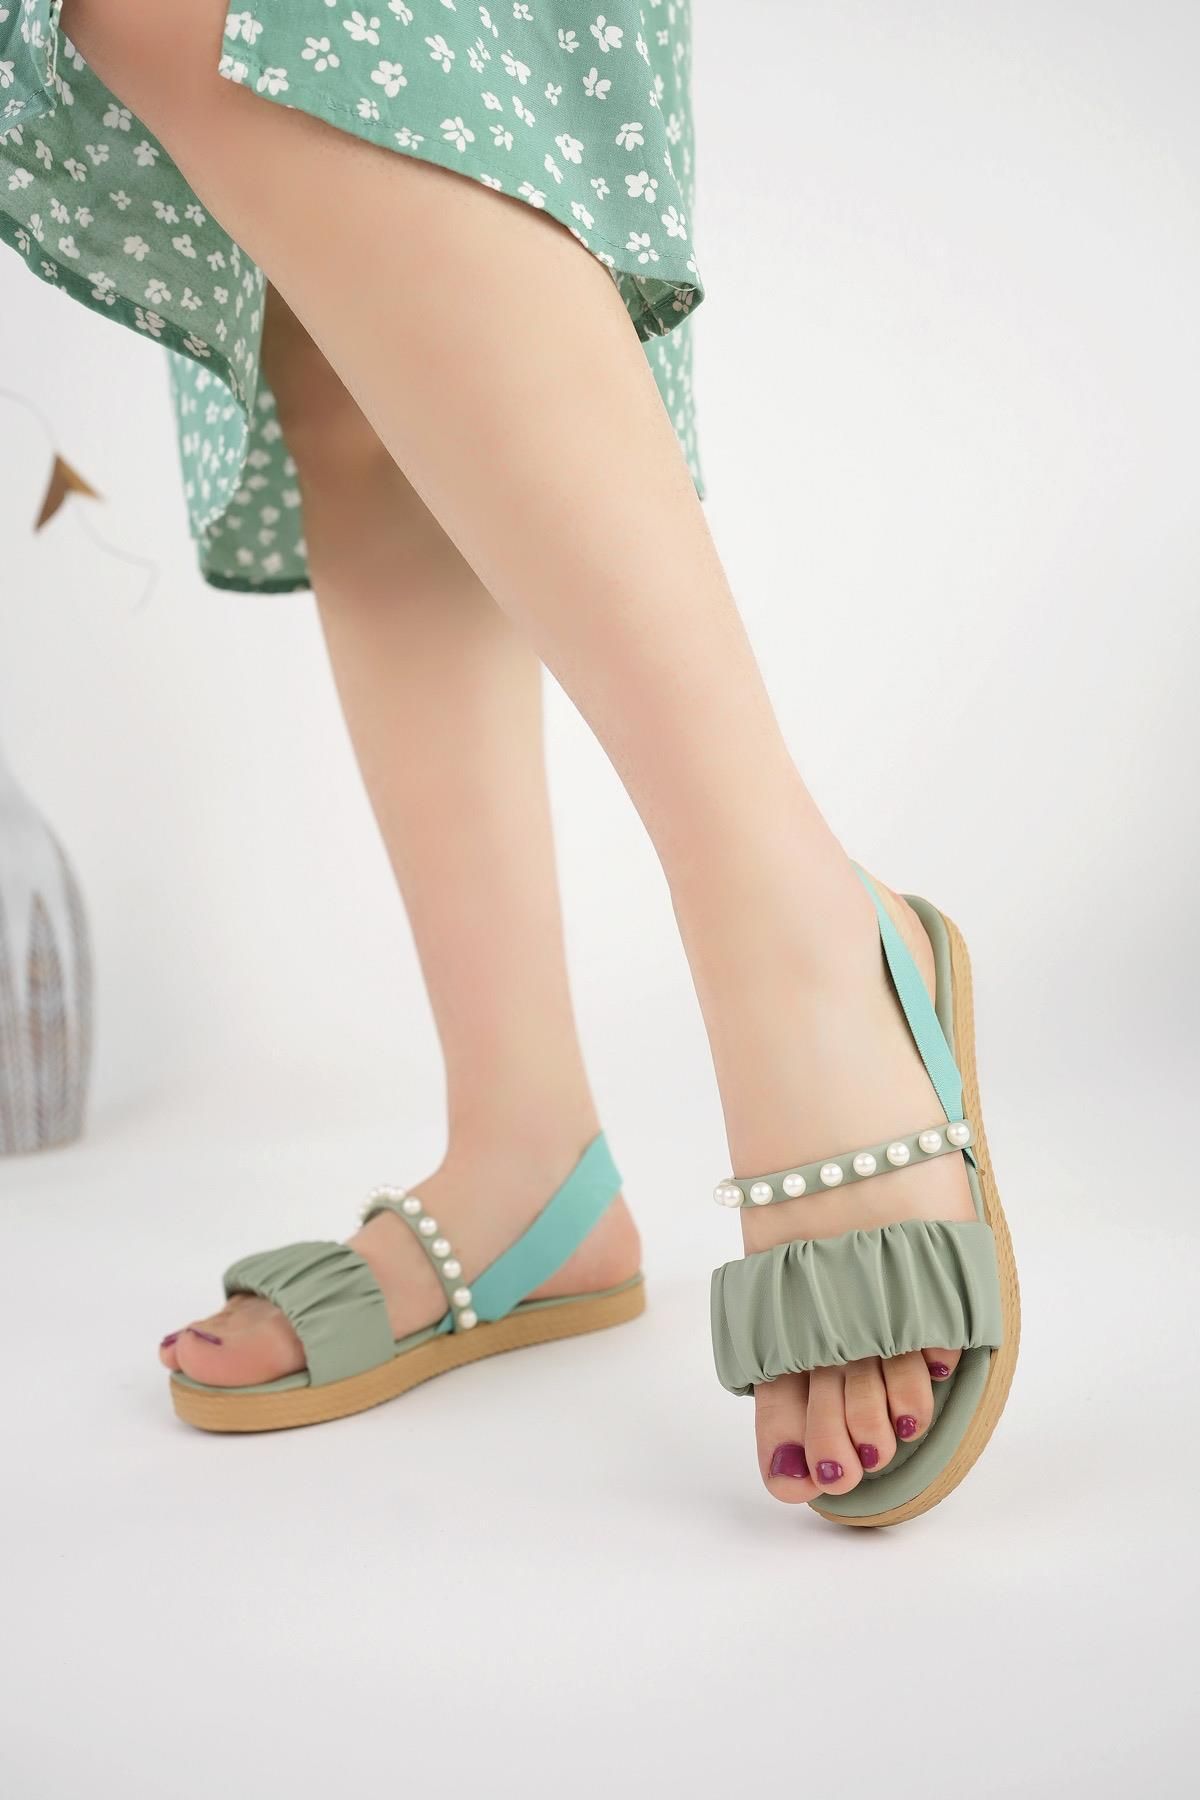 Moda Frato Modafrato İNCİLA Kadın Sandalet Hafif Yazlık Ayakkabı Rahat Taban